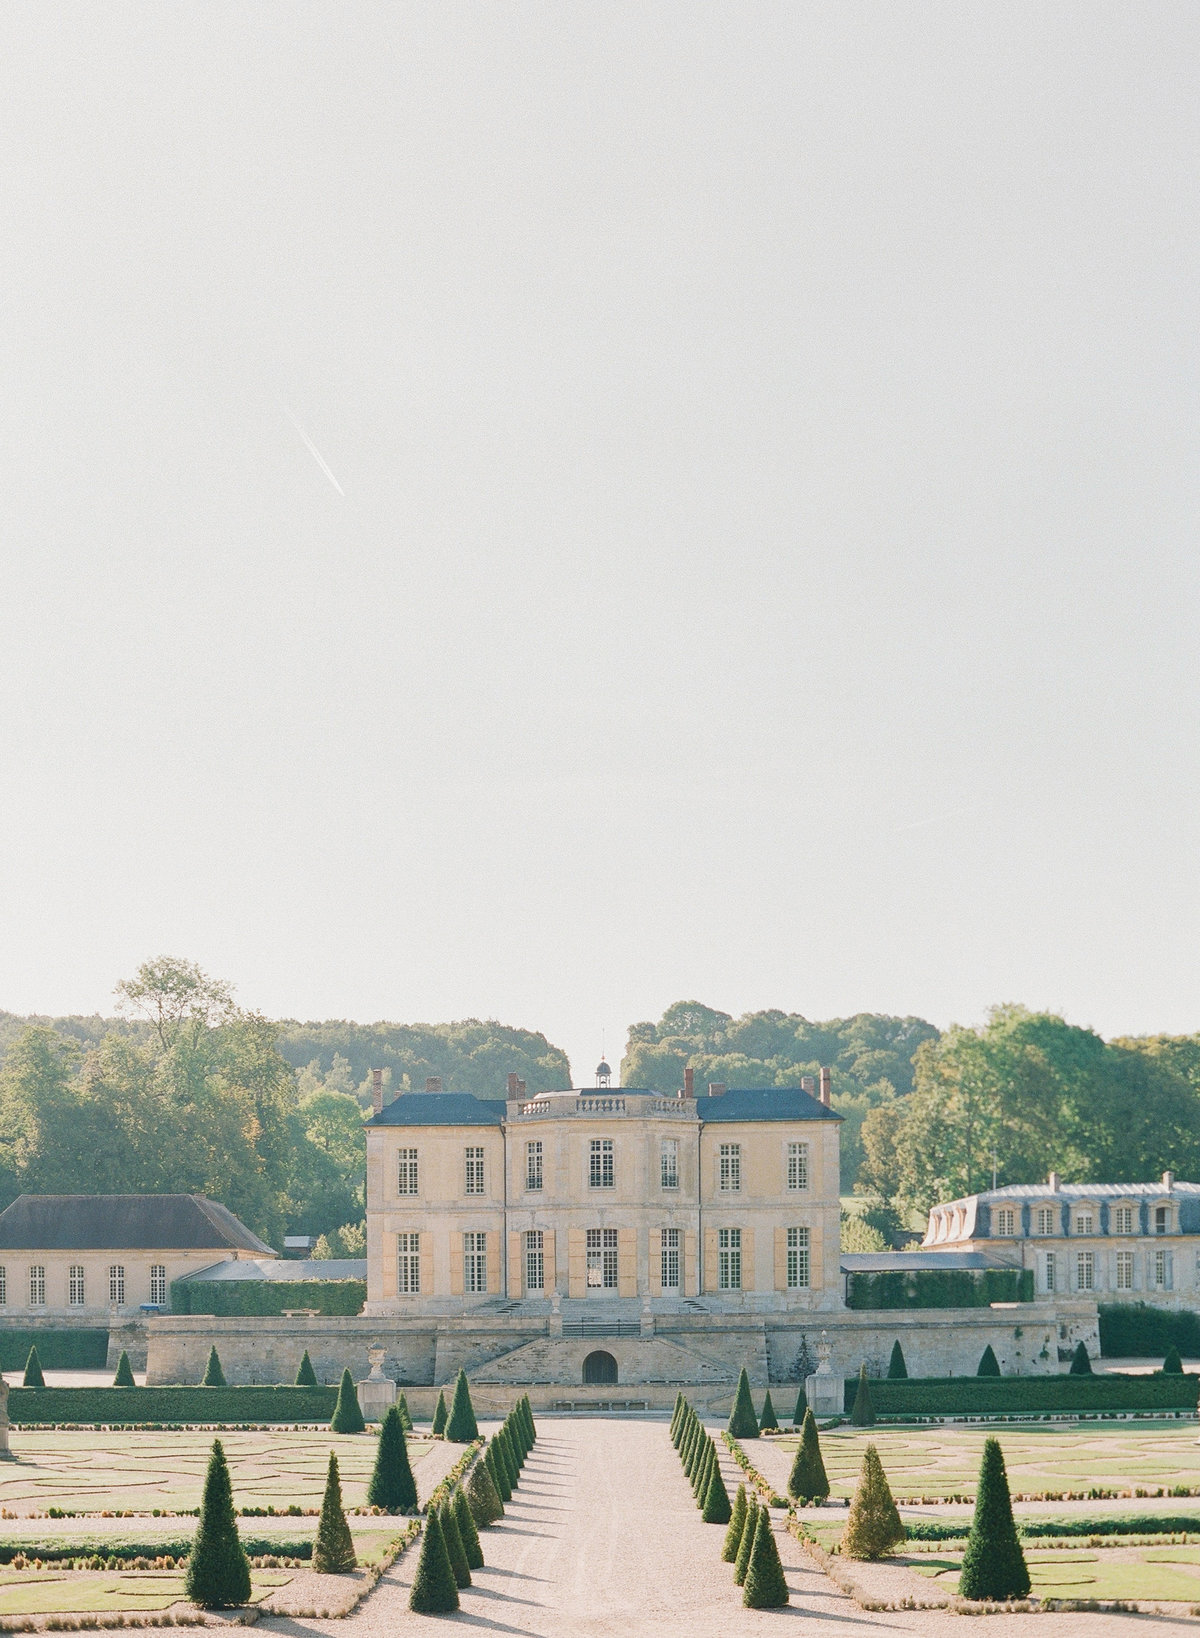 Château de Villette is a perfectly restored château wedding venue near Paris, France.